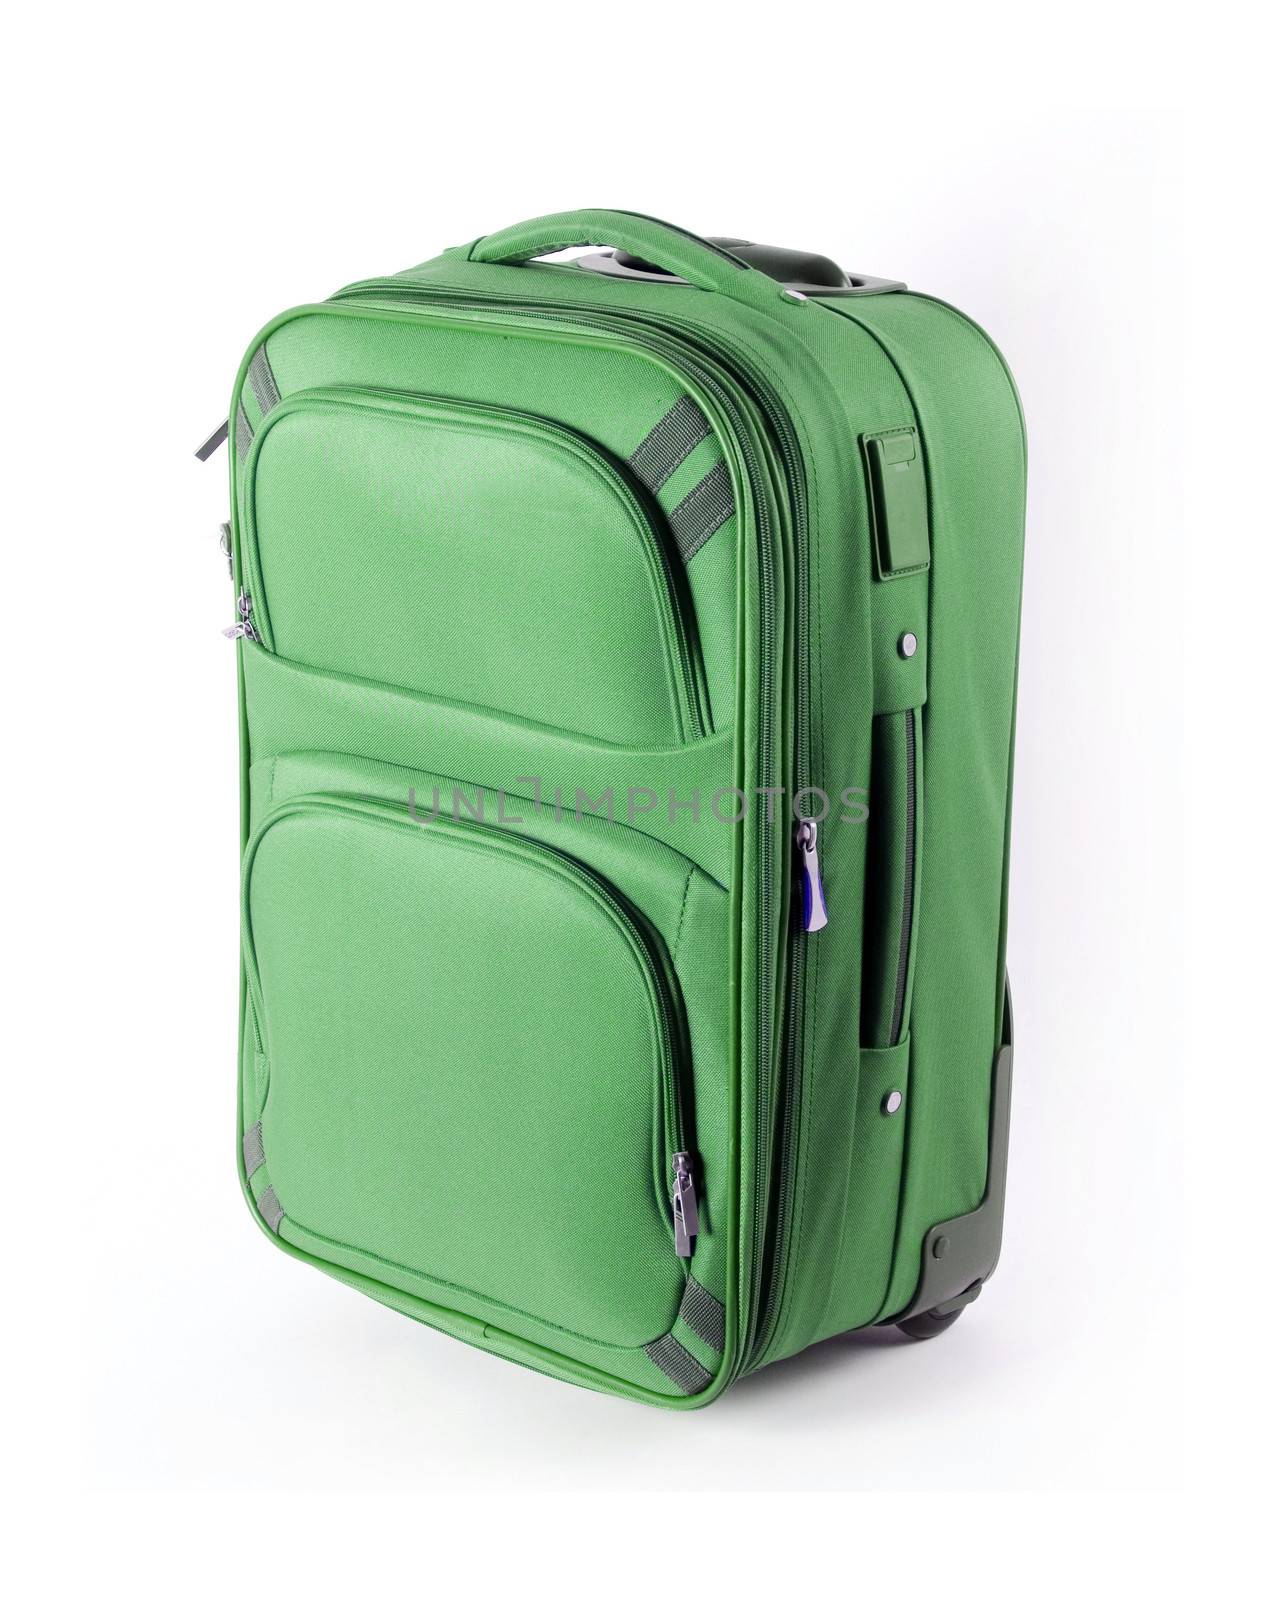 green suitcase by GekaSkr